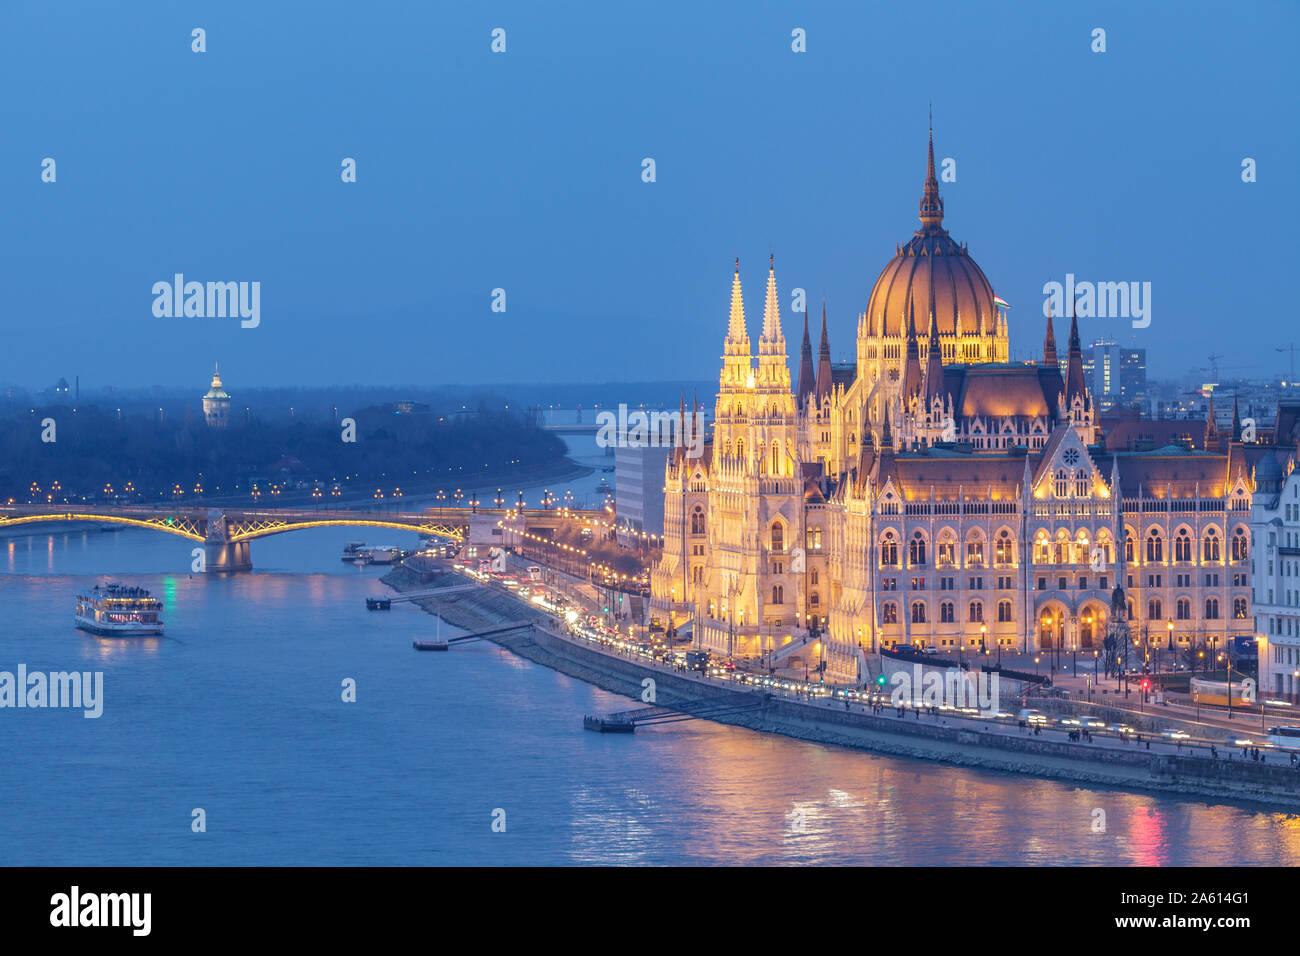 Das am Ufer der Donau, das ungarische Parlament Gebäude stammt aus dem späten 19. Jahrhundert, UNESCO, Budapest, Ungarn, Europa Stockfoto